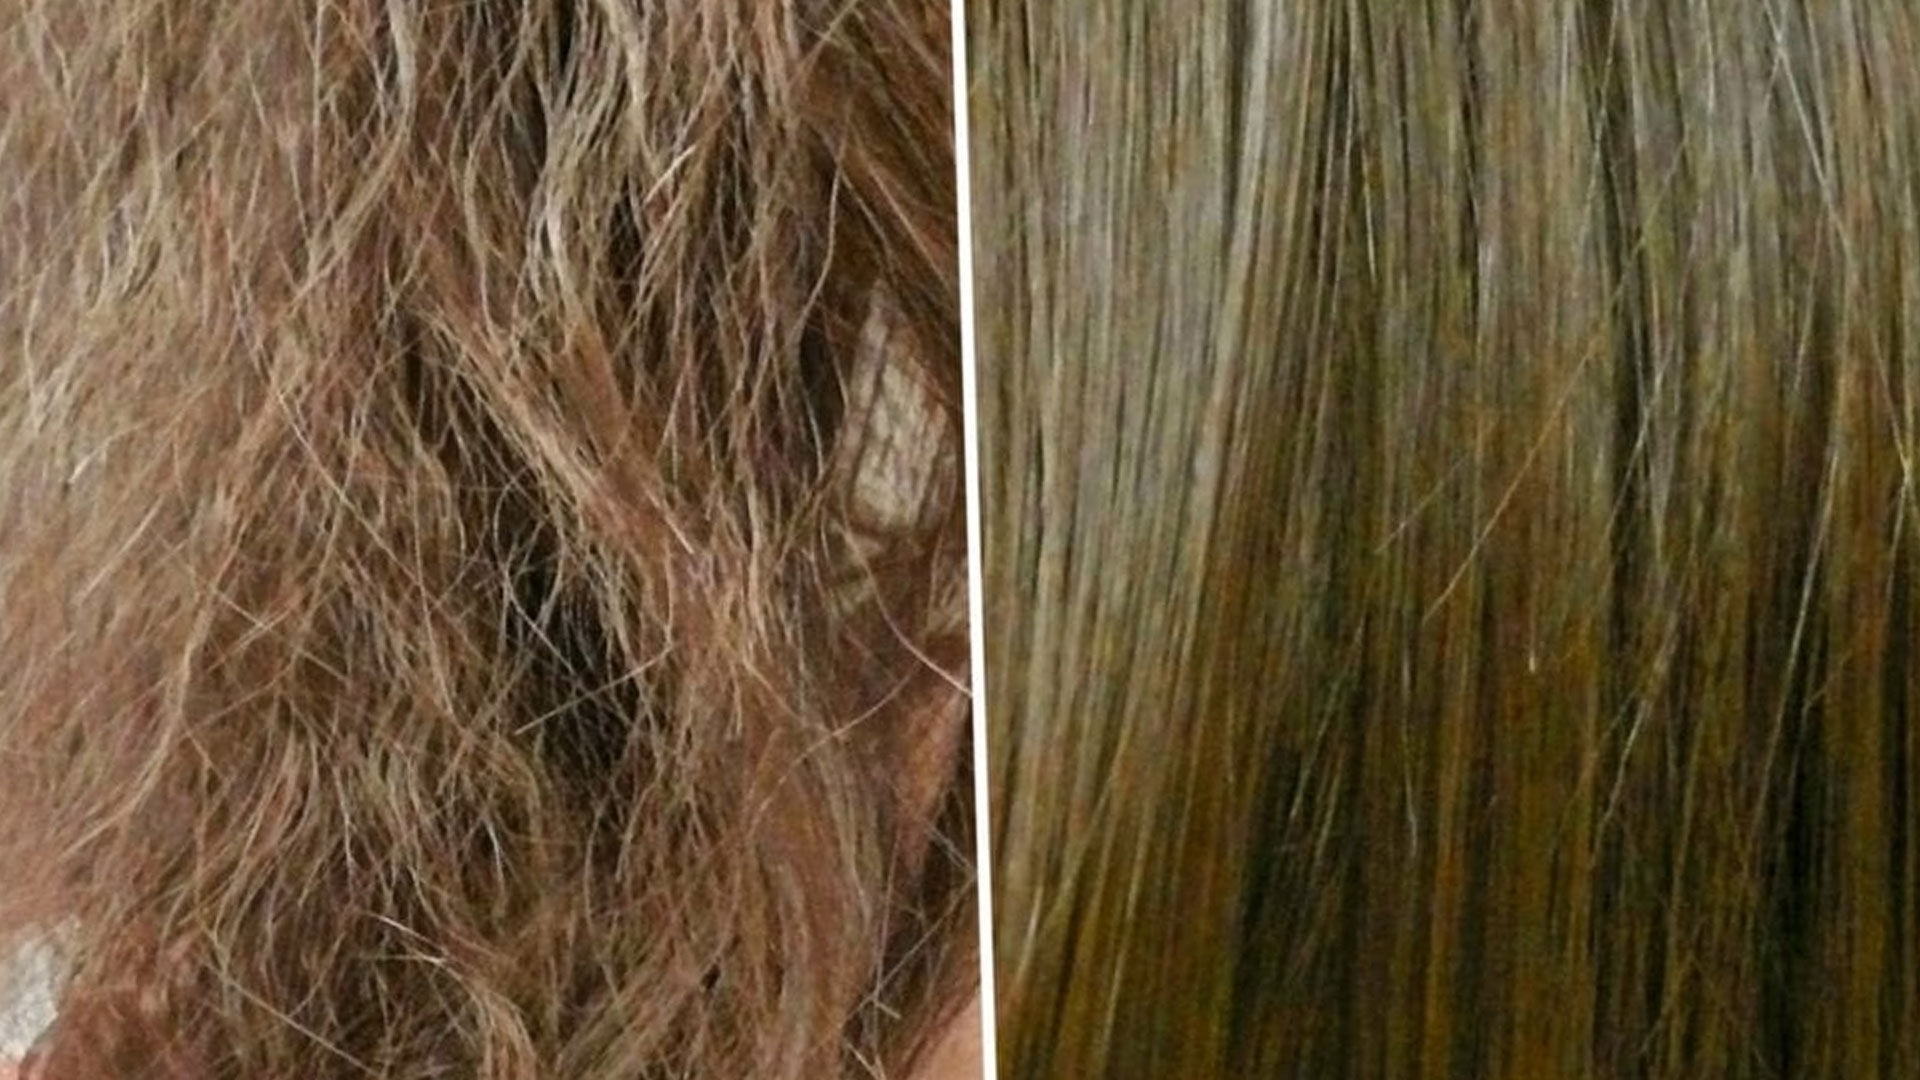 وصفات تكثيف الشعر بشكل طبيعي بزيت الزيتون للحصول على شعر ناعم وصحي